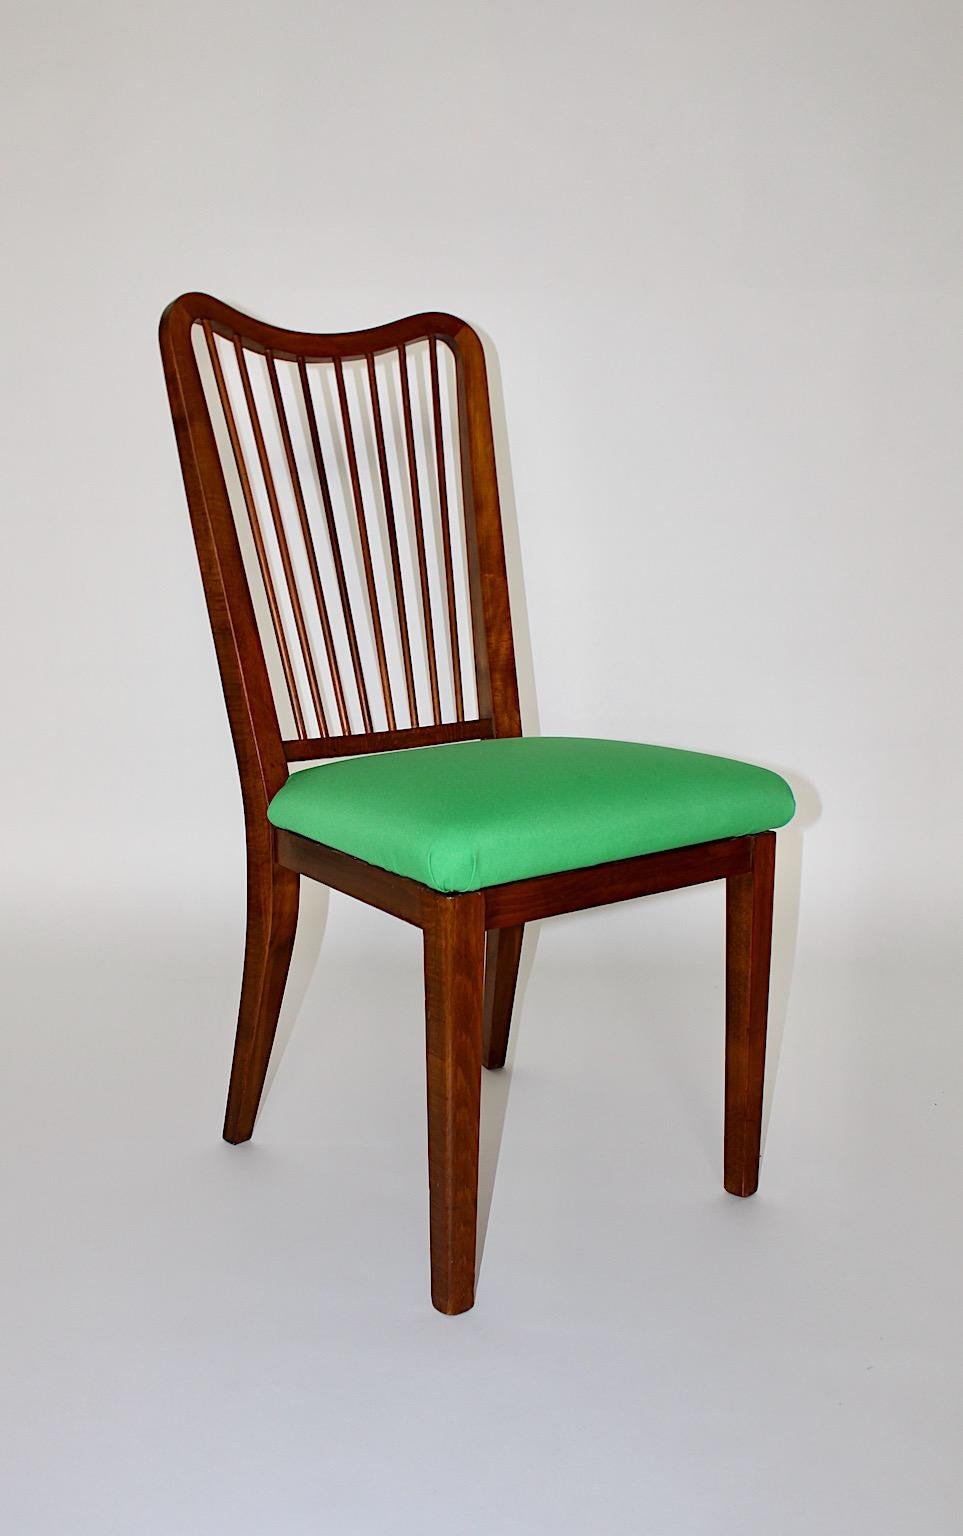 Mid-Century Modern Beistellstuhl oder Bürostuhl aus Buche mit Polsterung in grünem Textilstoff 1950er Jahre Wien.
Ein schöner Beistellstuhl oder Stuhlentwurf, der Oswald Haerdtl zugeschrieben wird, aus Buche, Nussbaum gebeizt, Schellack von Hand